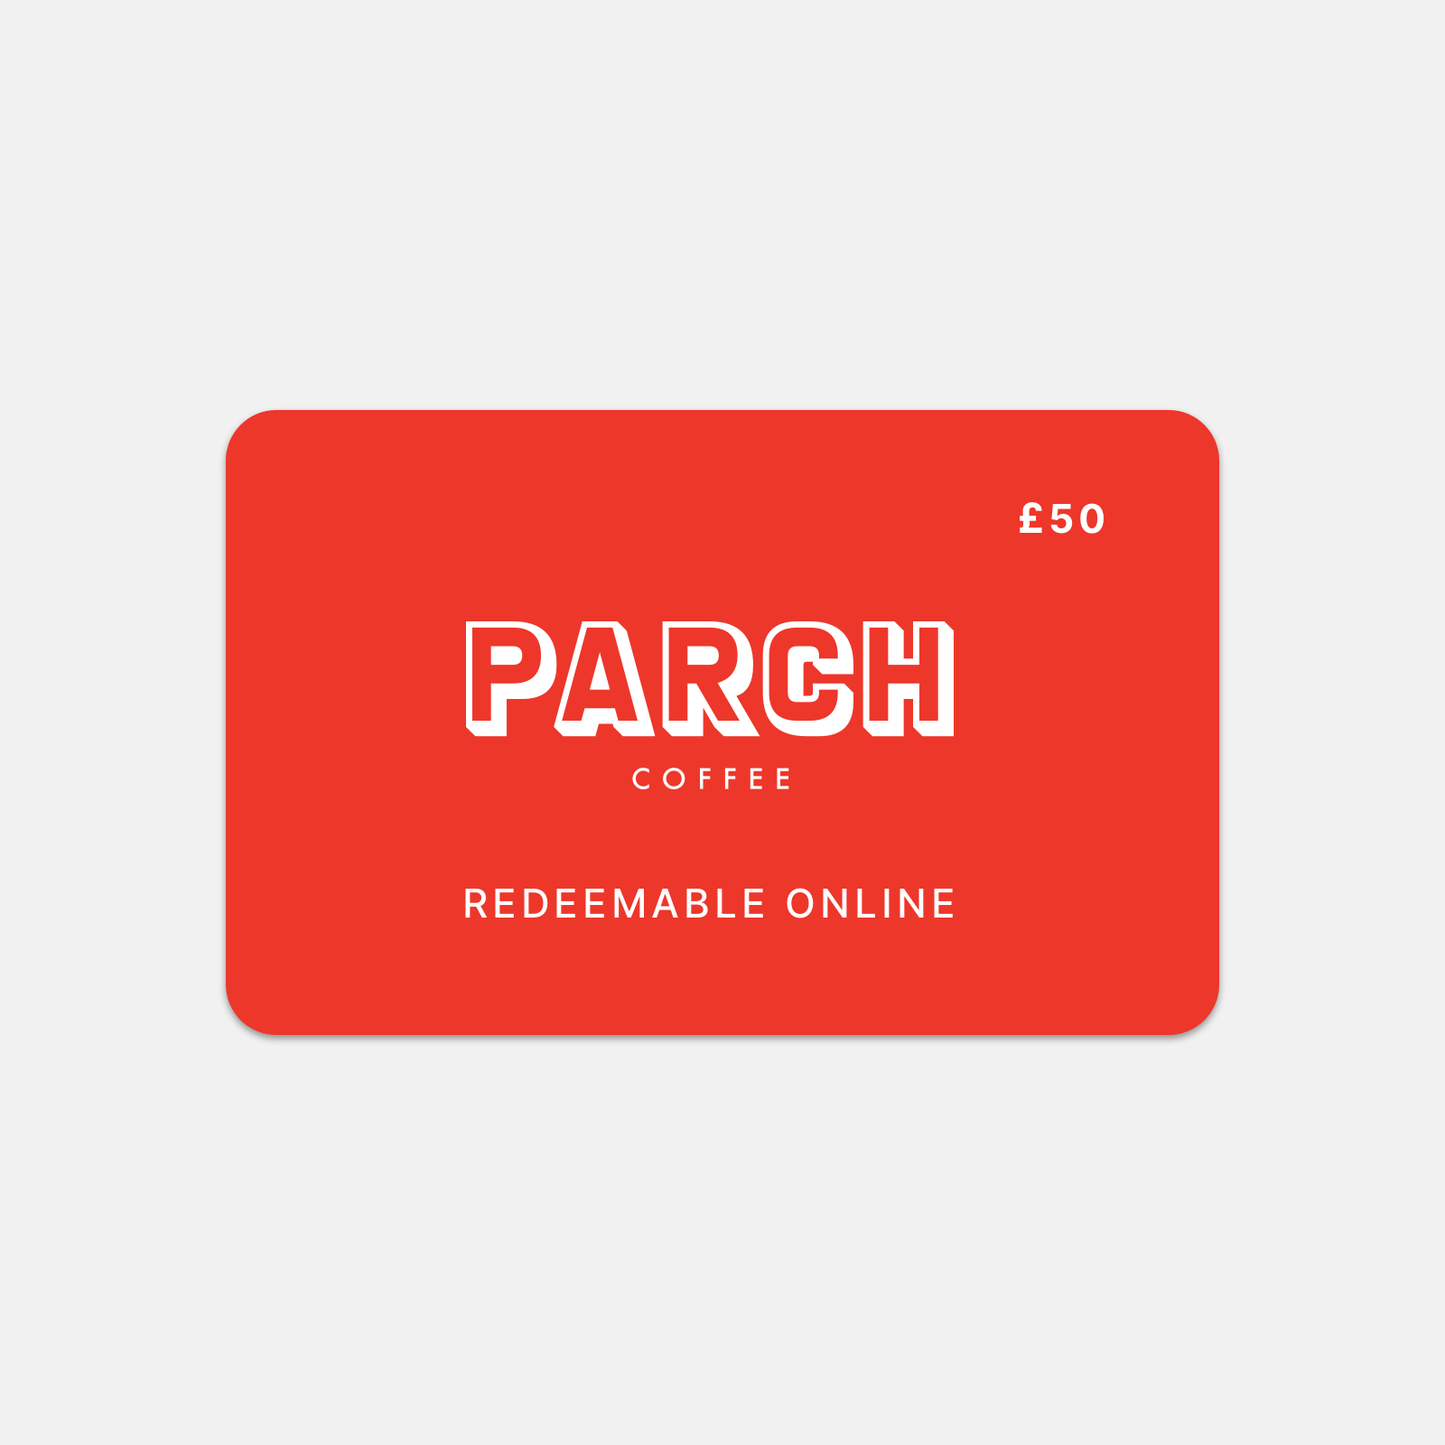 eGift voucher from Parch Coffee